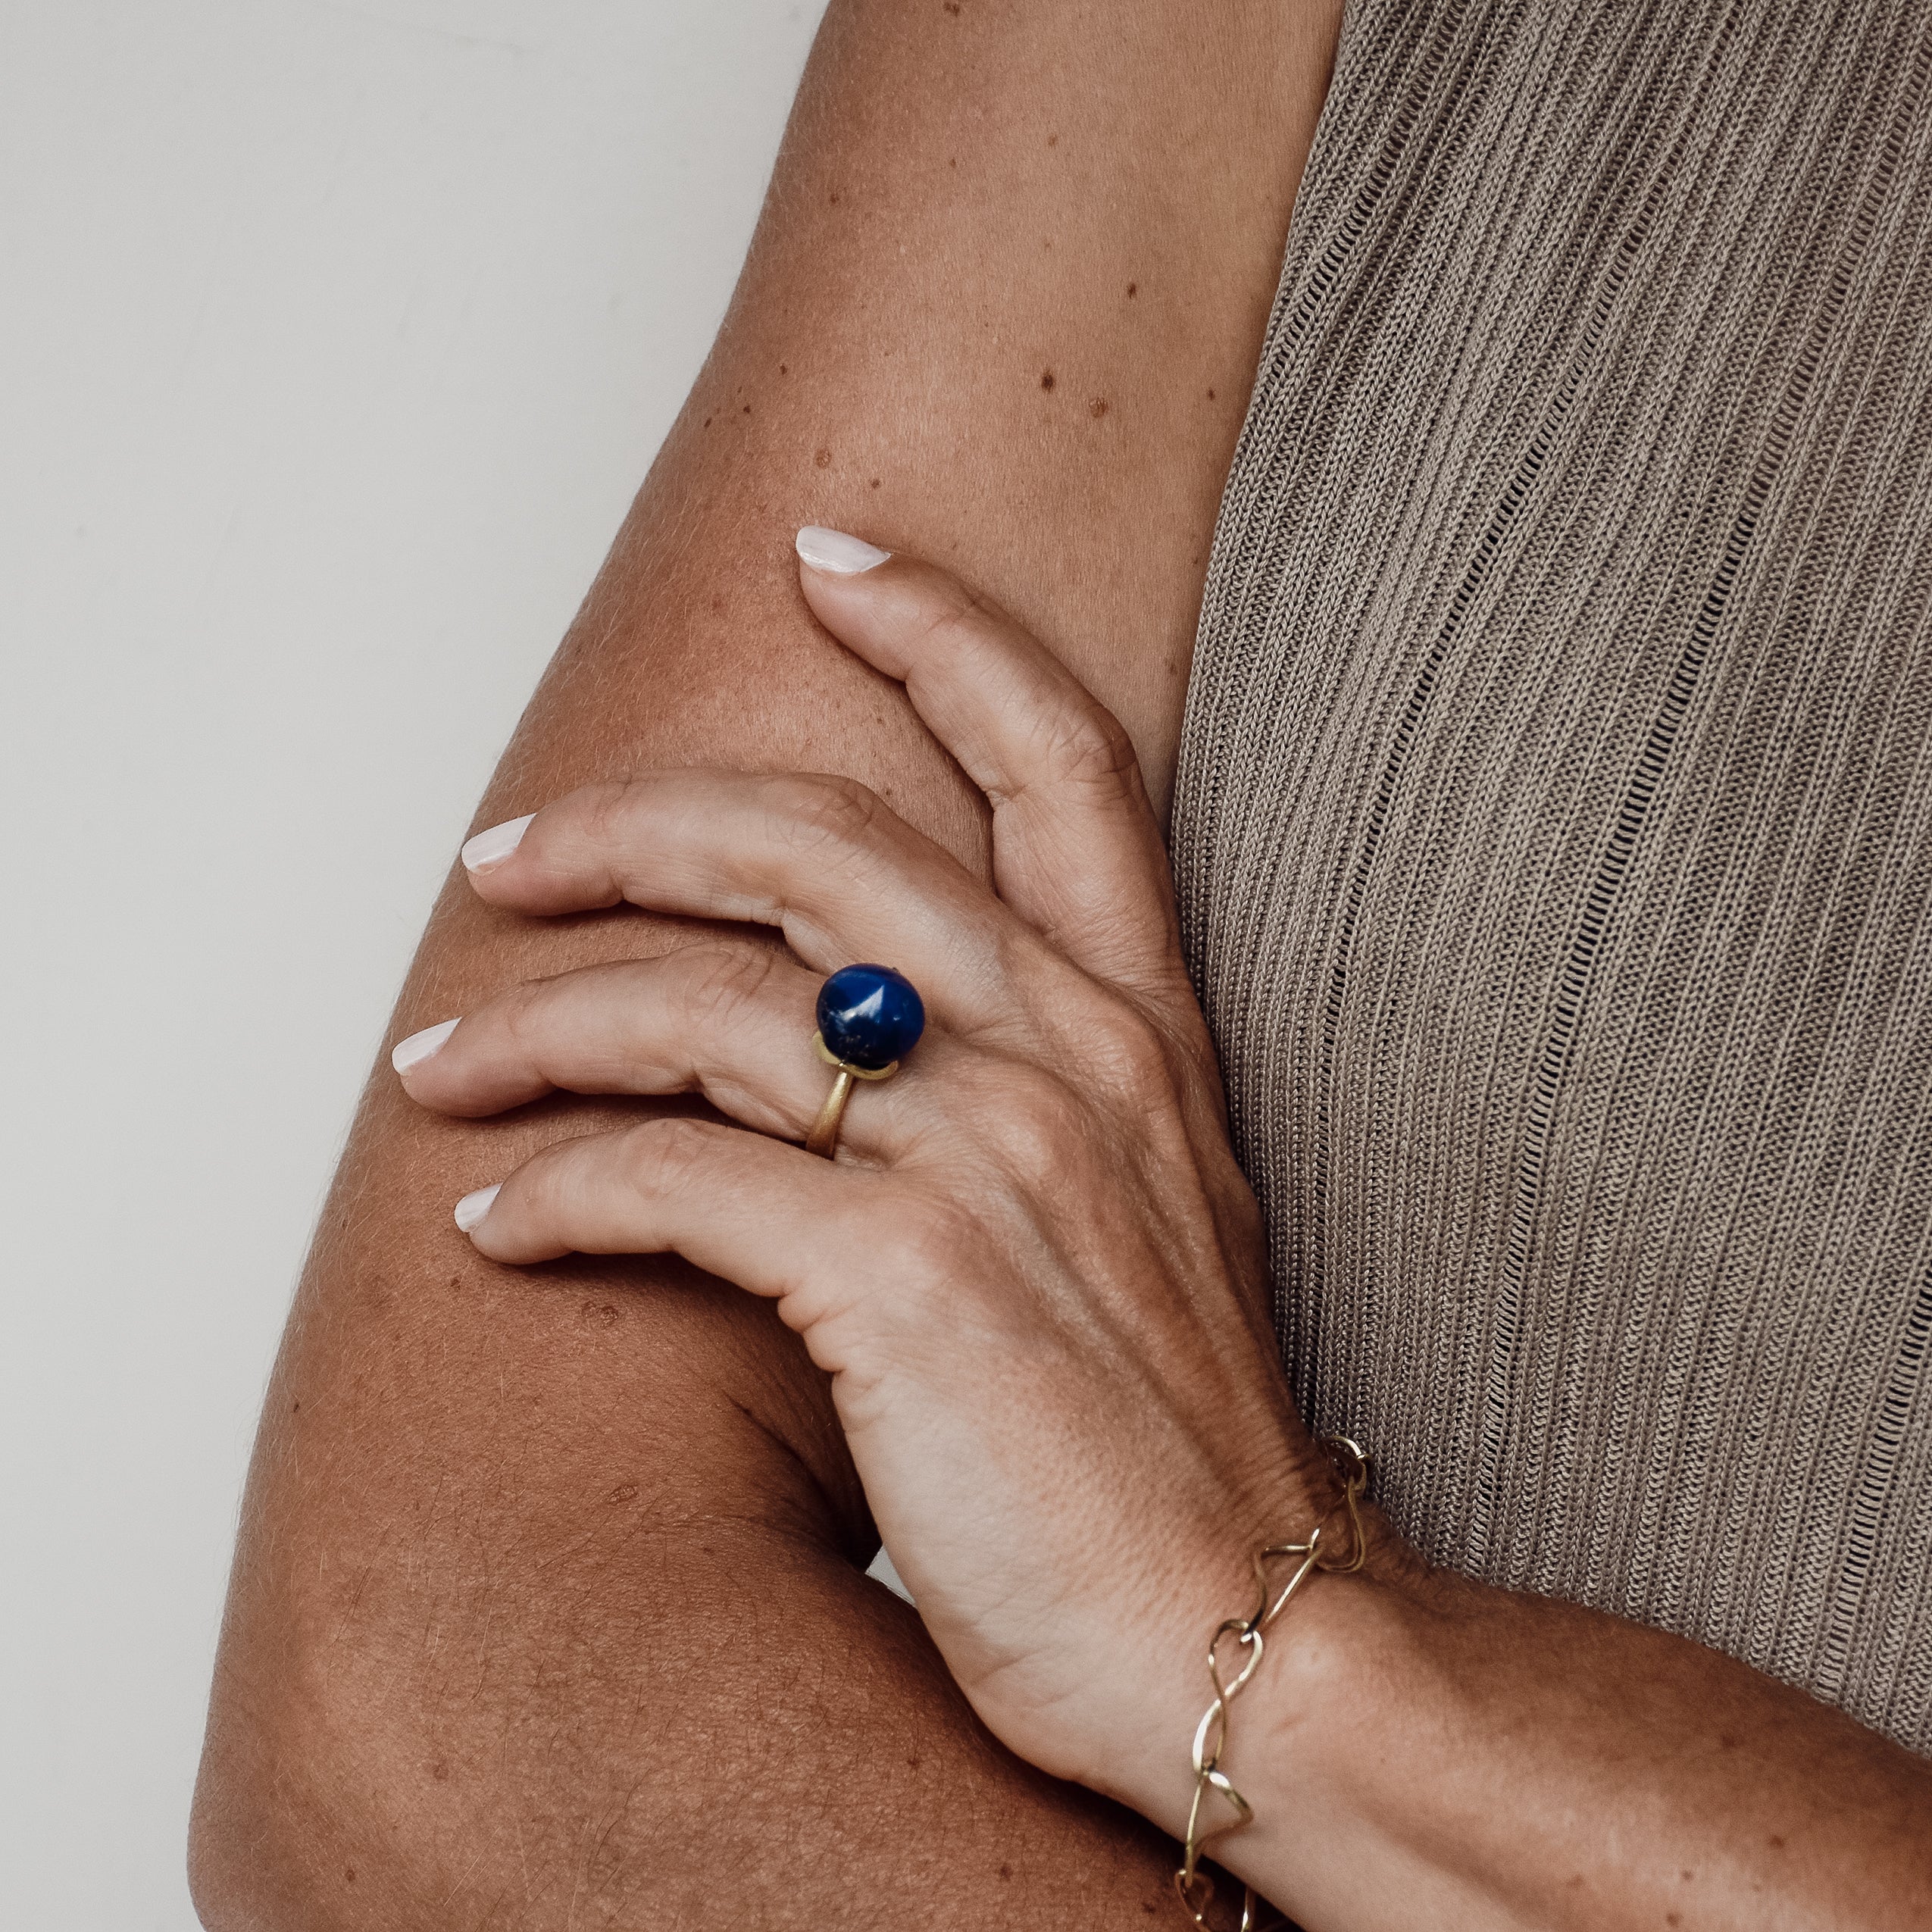 Dolce-ring "stor" med lapis lazuli 925/-